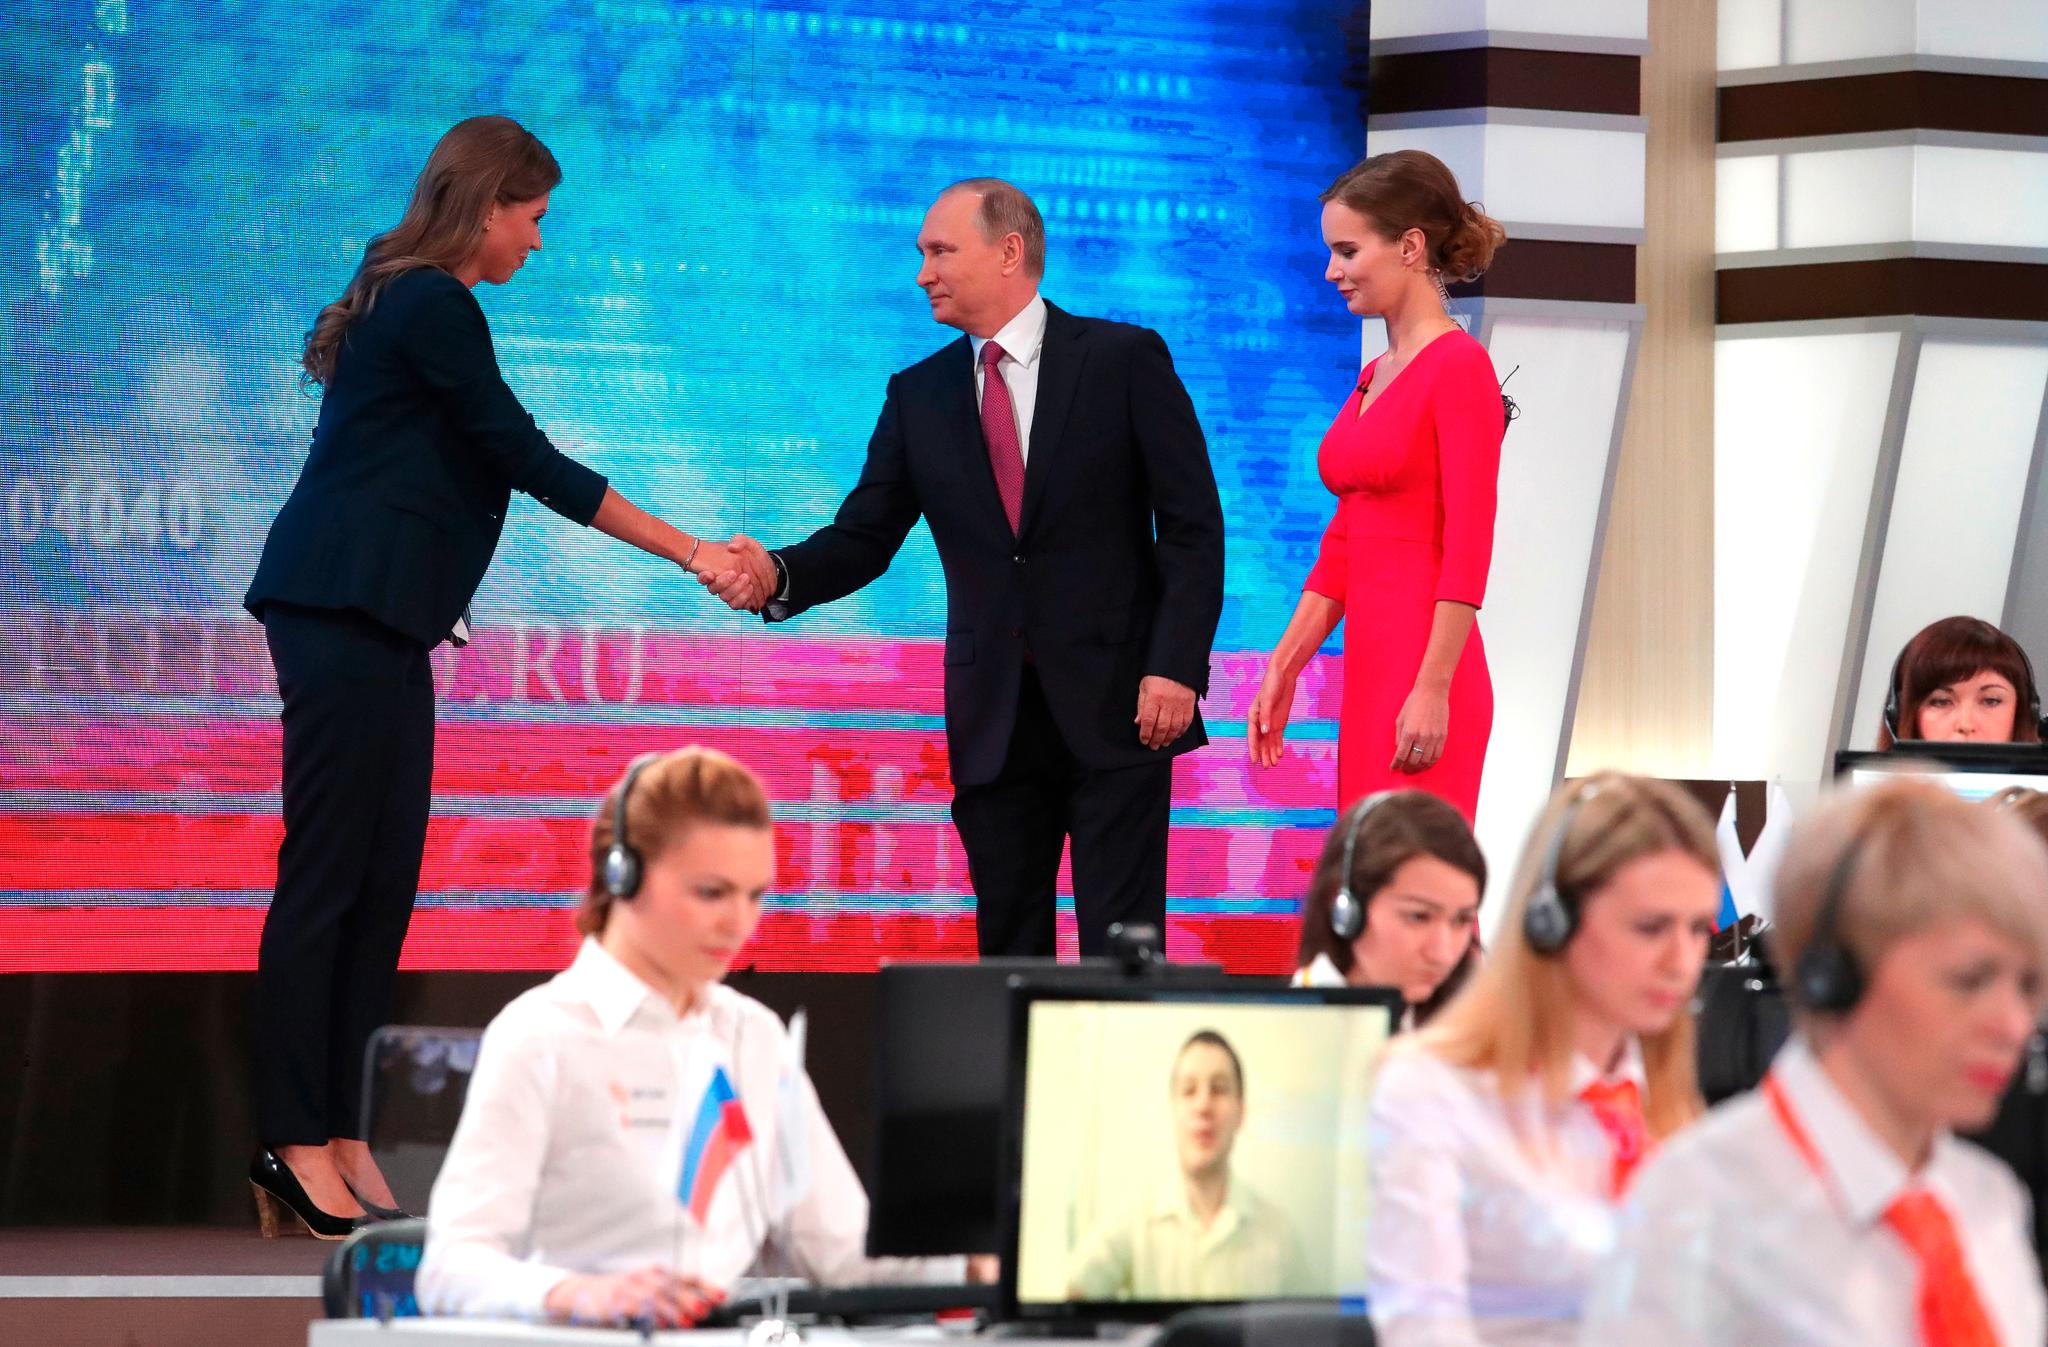  Putin bli tatt imot av en studiovertinne i rød kjole da han startet TV-showet «Direkte linje med Vladimir Putin» kl. 11 norsk tid i dag 